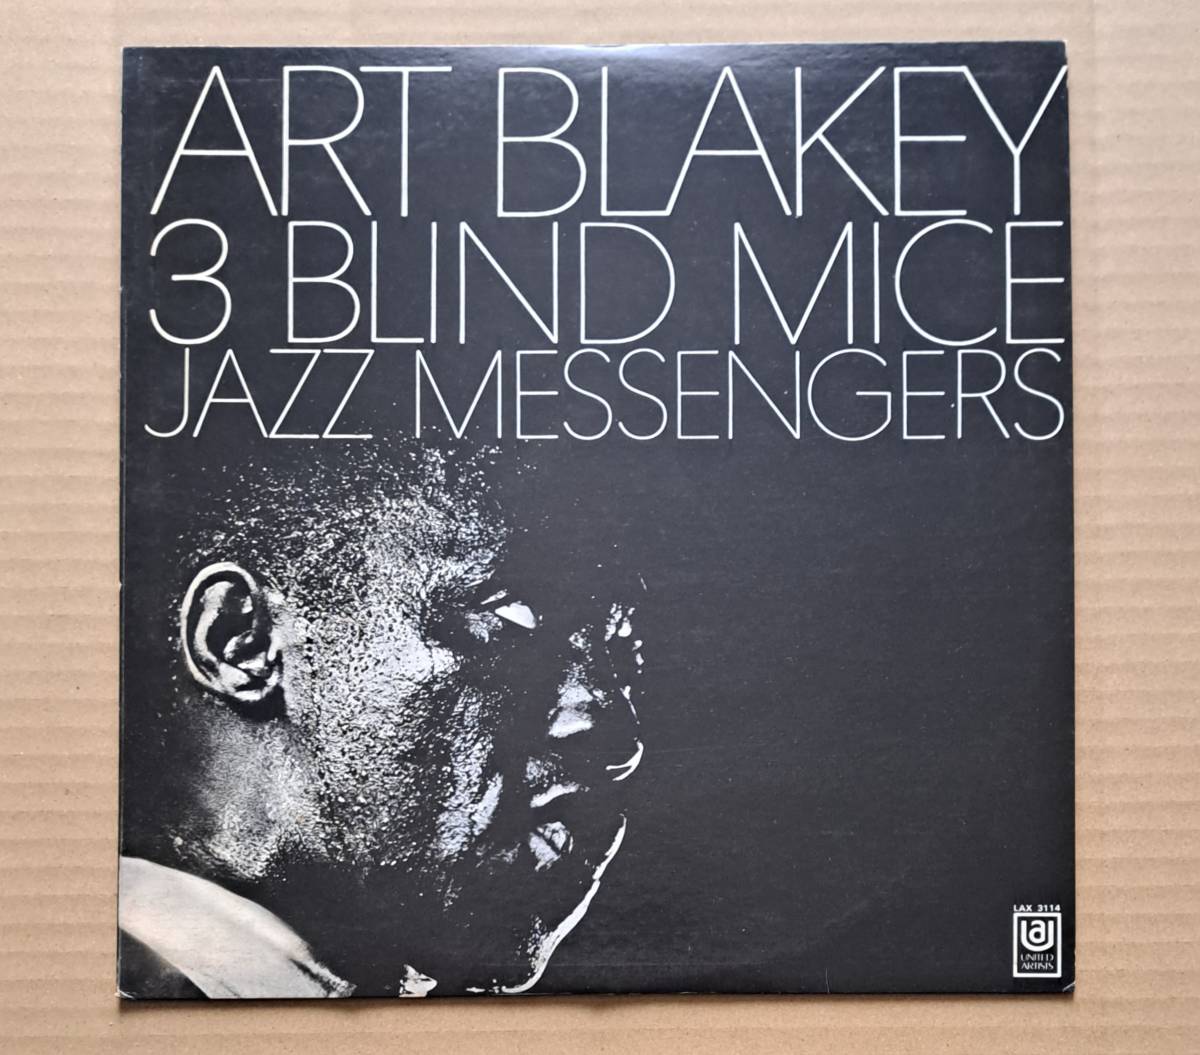 国内盤LP◎アート・ブレイキーとジャズ・メッセンジャーズ『スリー・ブラインド・マイス』LAX-3114 キング 1976年 Art Blakey 64891J_画像1